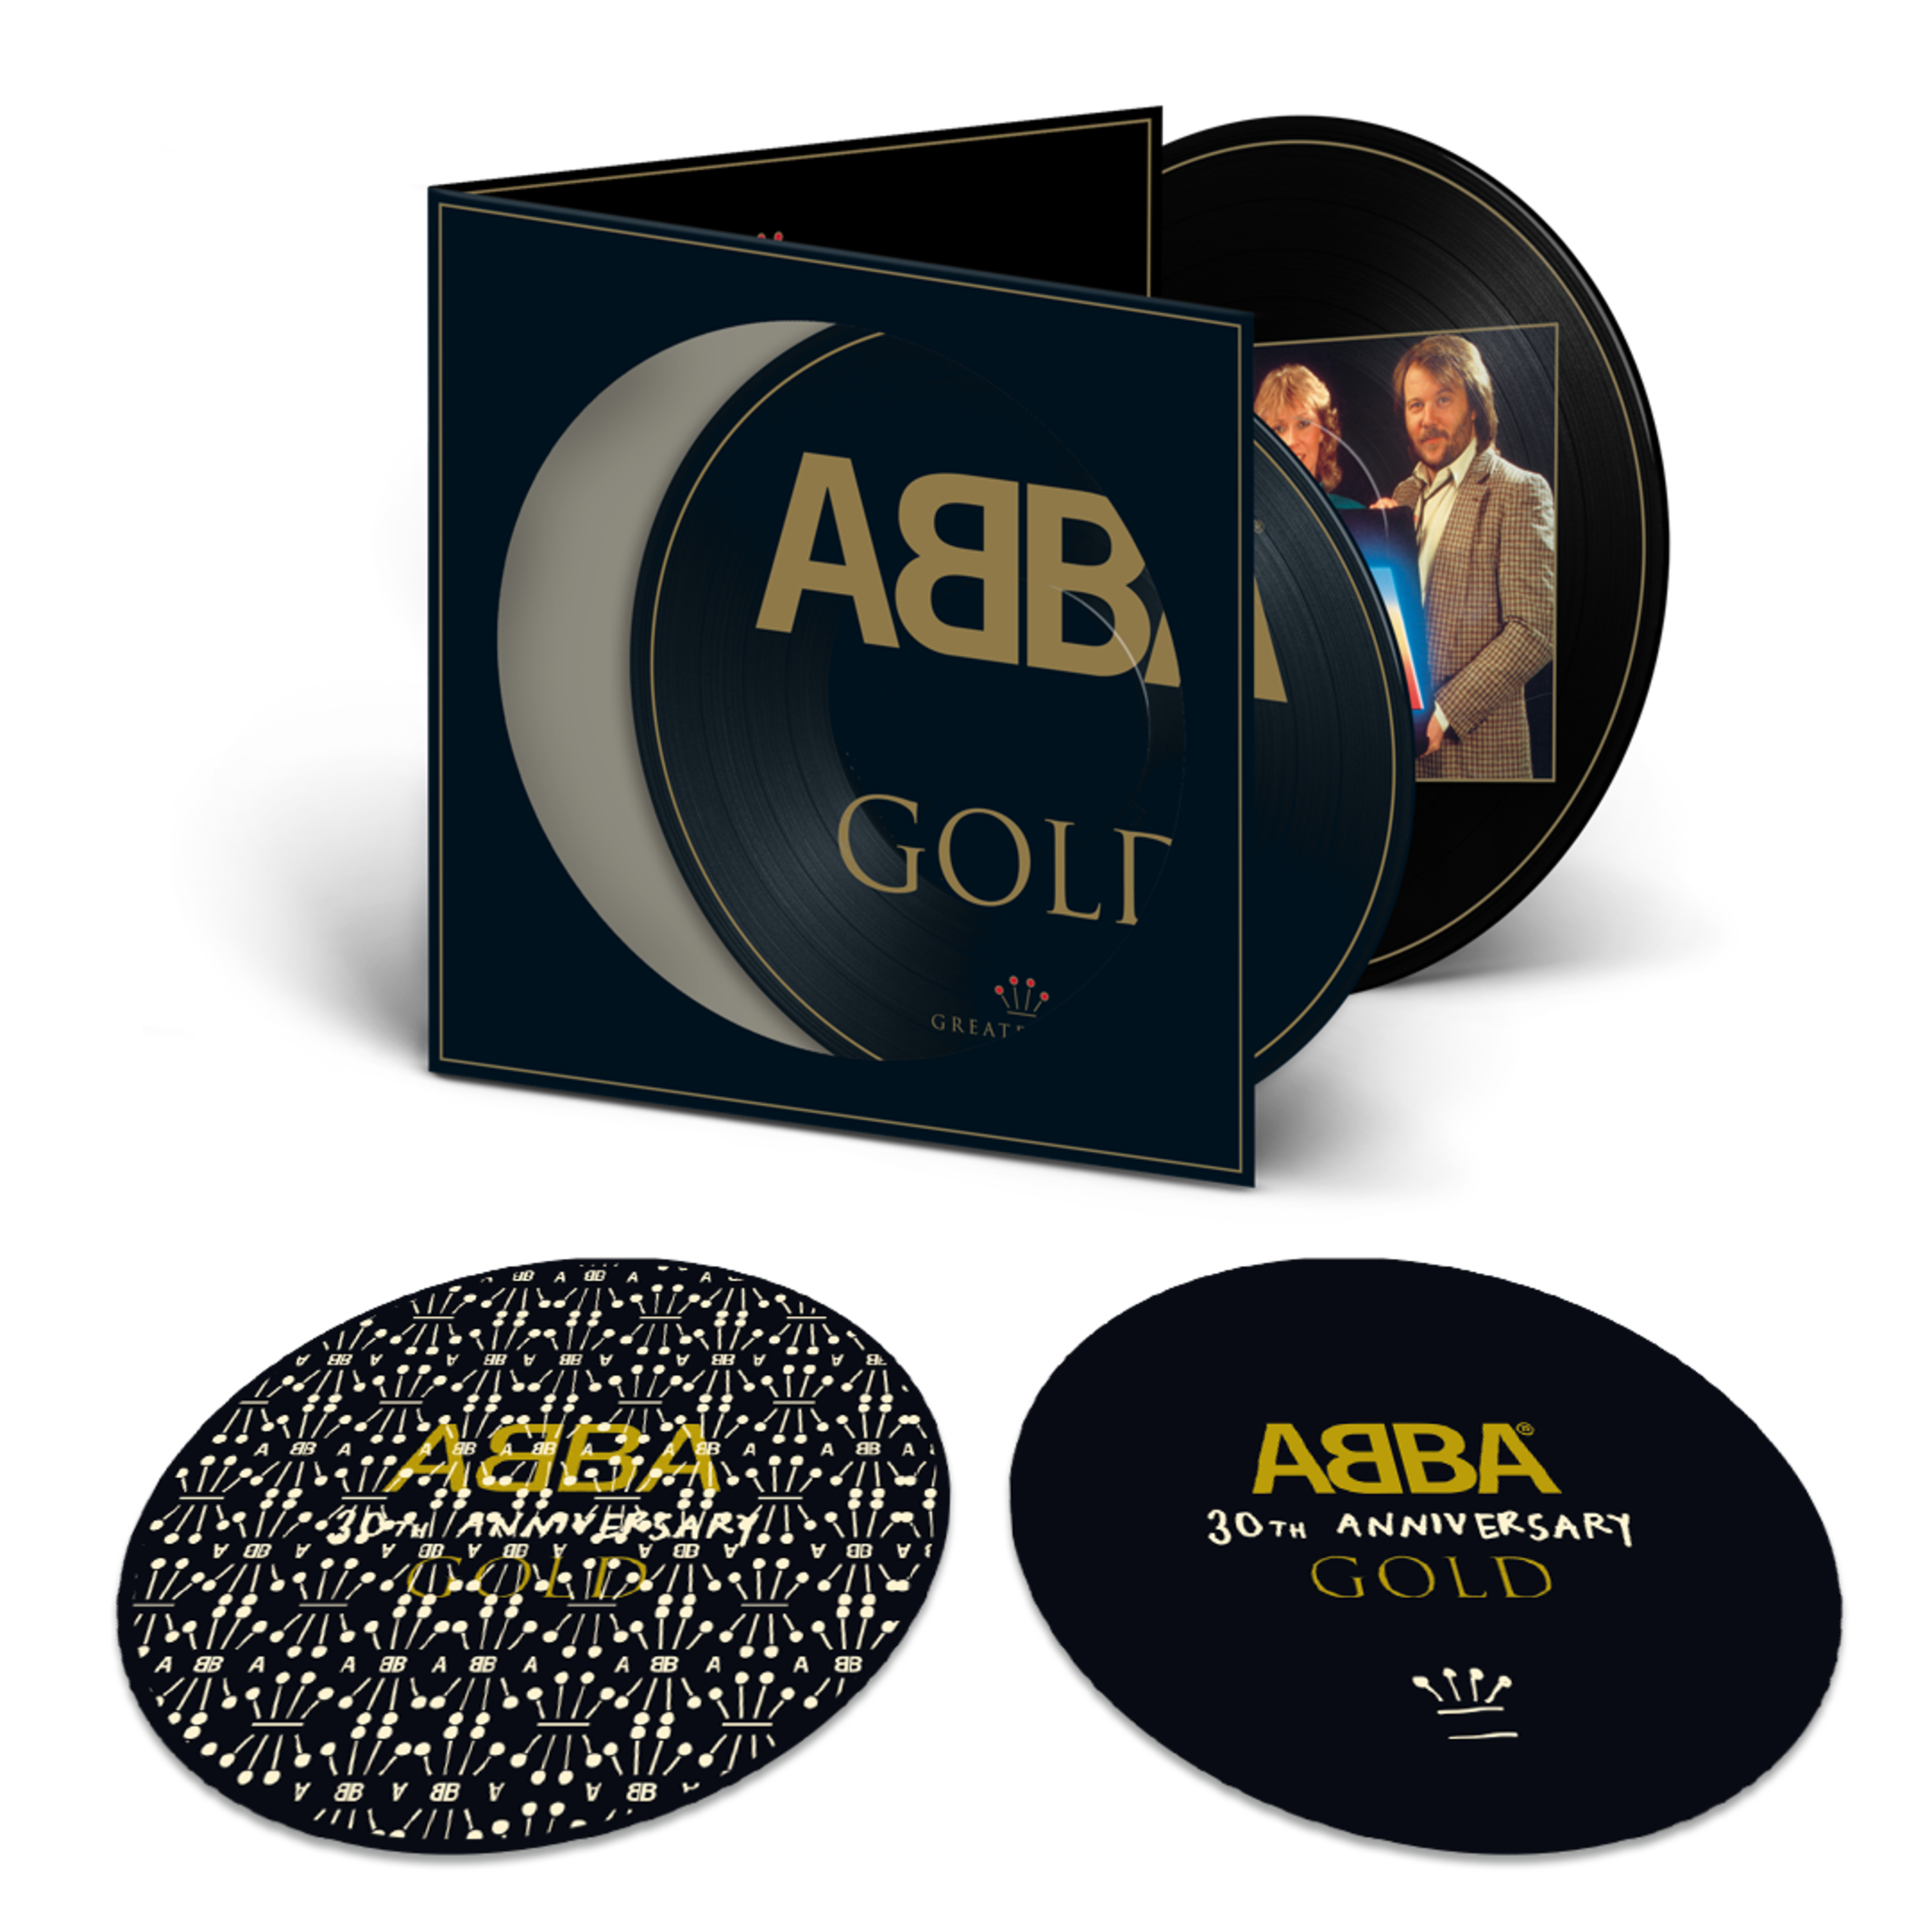 https://images.bravado.de/prod/product-assets/product-asset-data/abba/abba/products/143576/web/325220/image-thumb__325220__3000x3000_original/ABBA-Gold-30th-Anniversary-Vinyl-Bundle-zu-bundeln-143576-325220.png